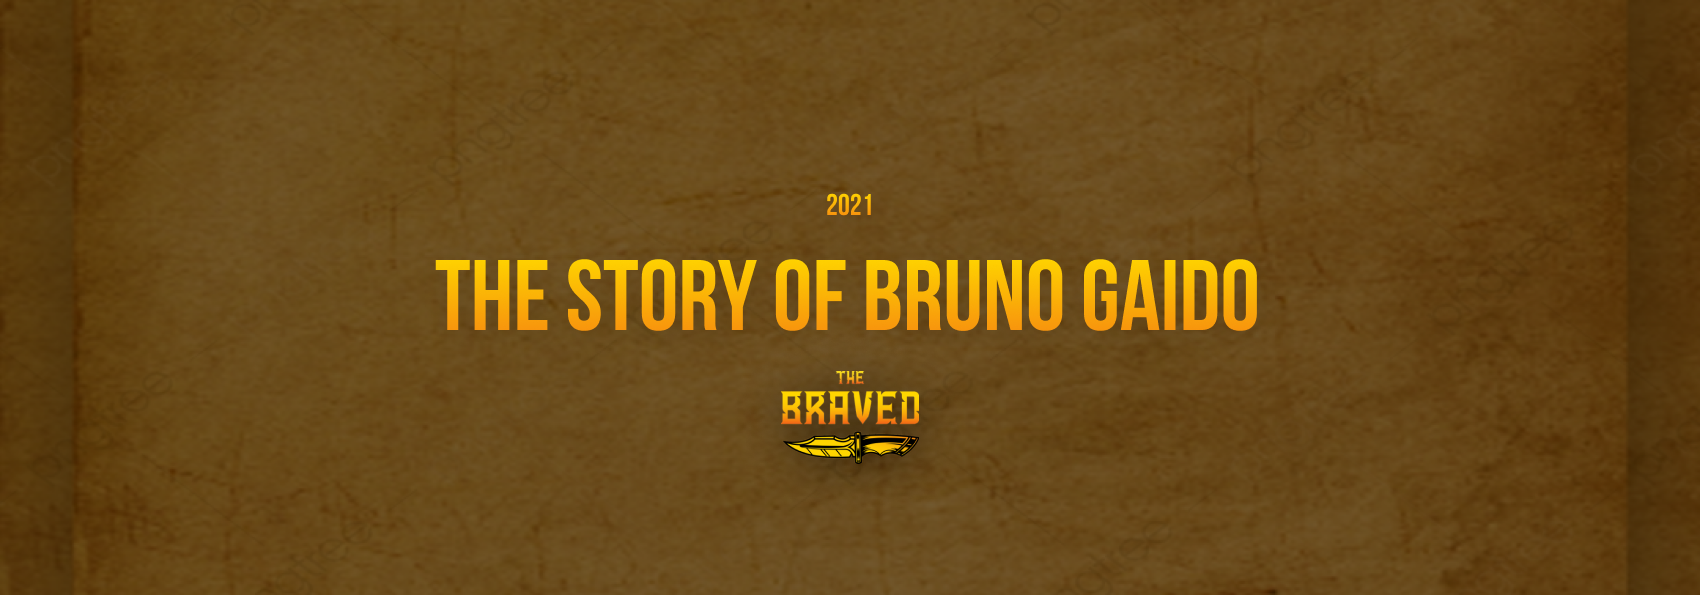 The Story of Bruno Gaido